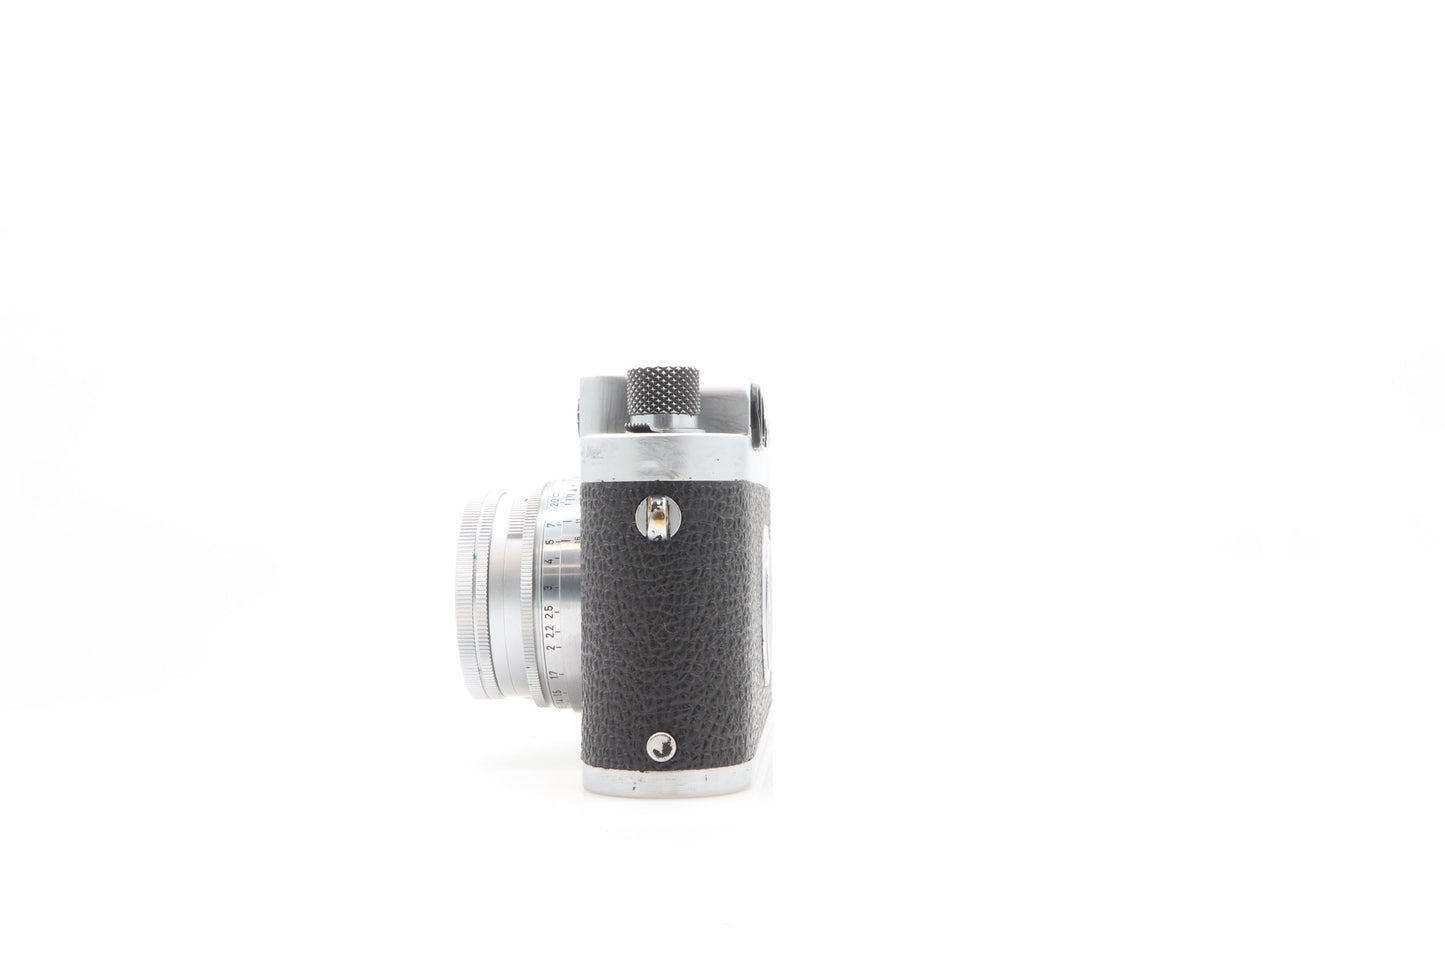 Leica IIIG + 50mm 2.0 summicron m39